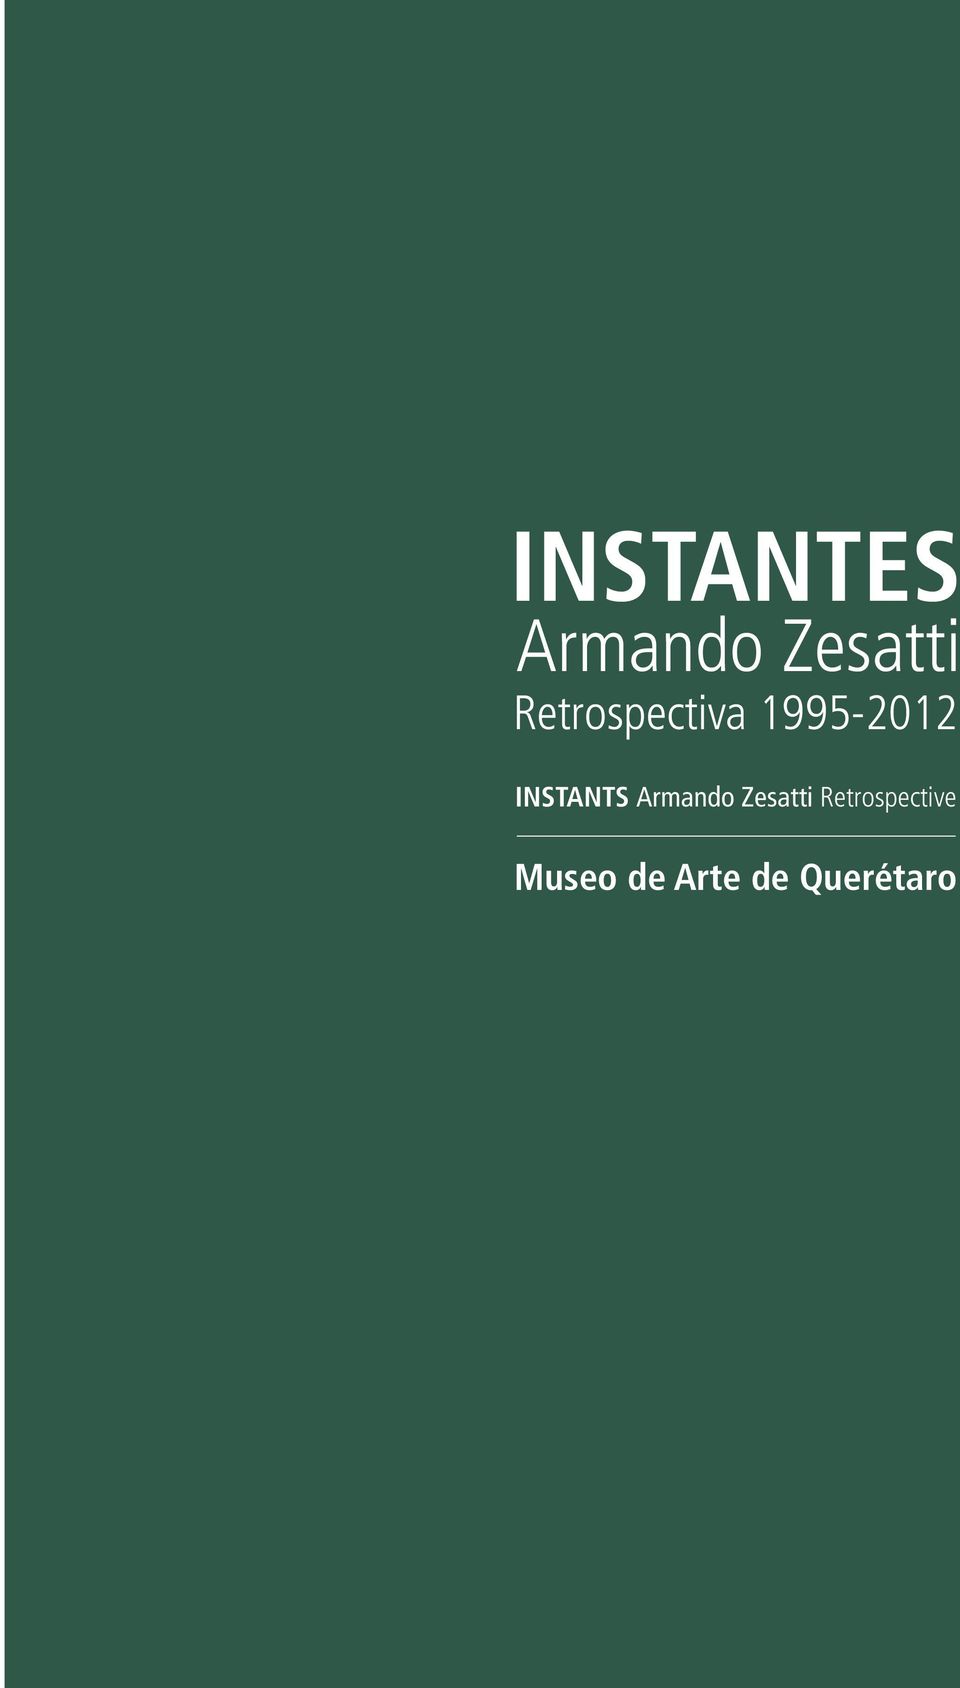 INSTANTS Armando Zesatti